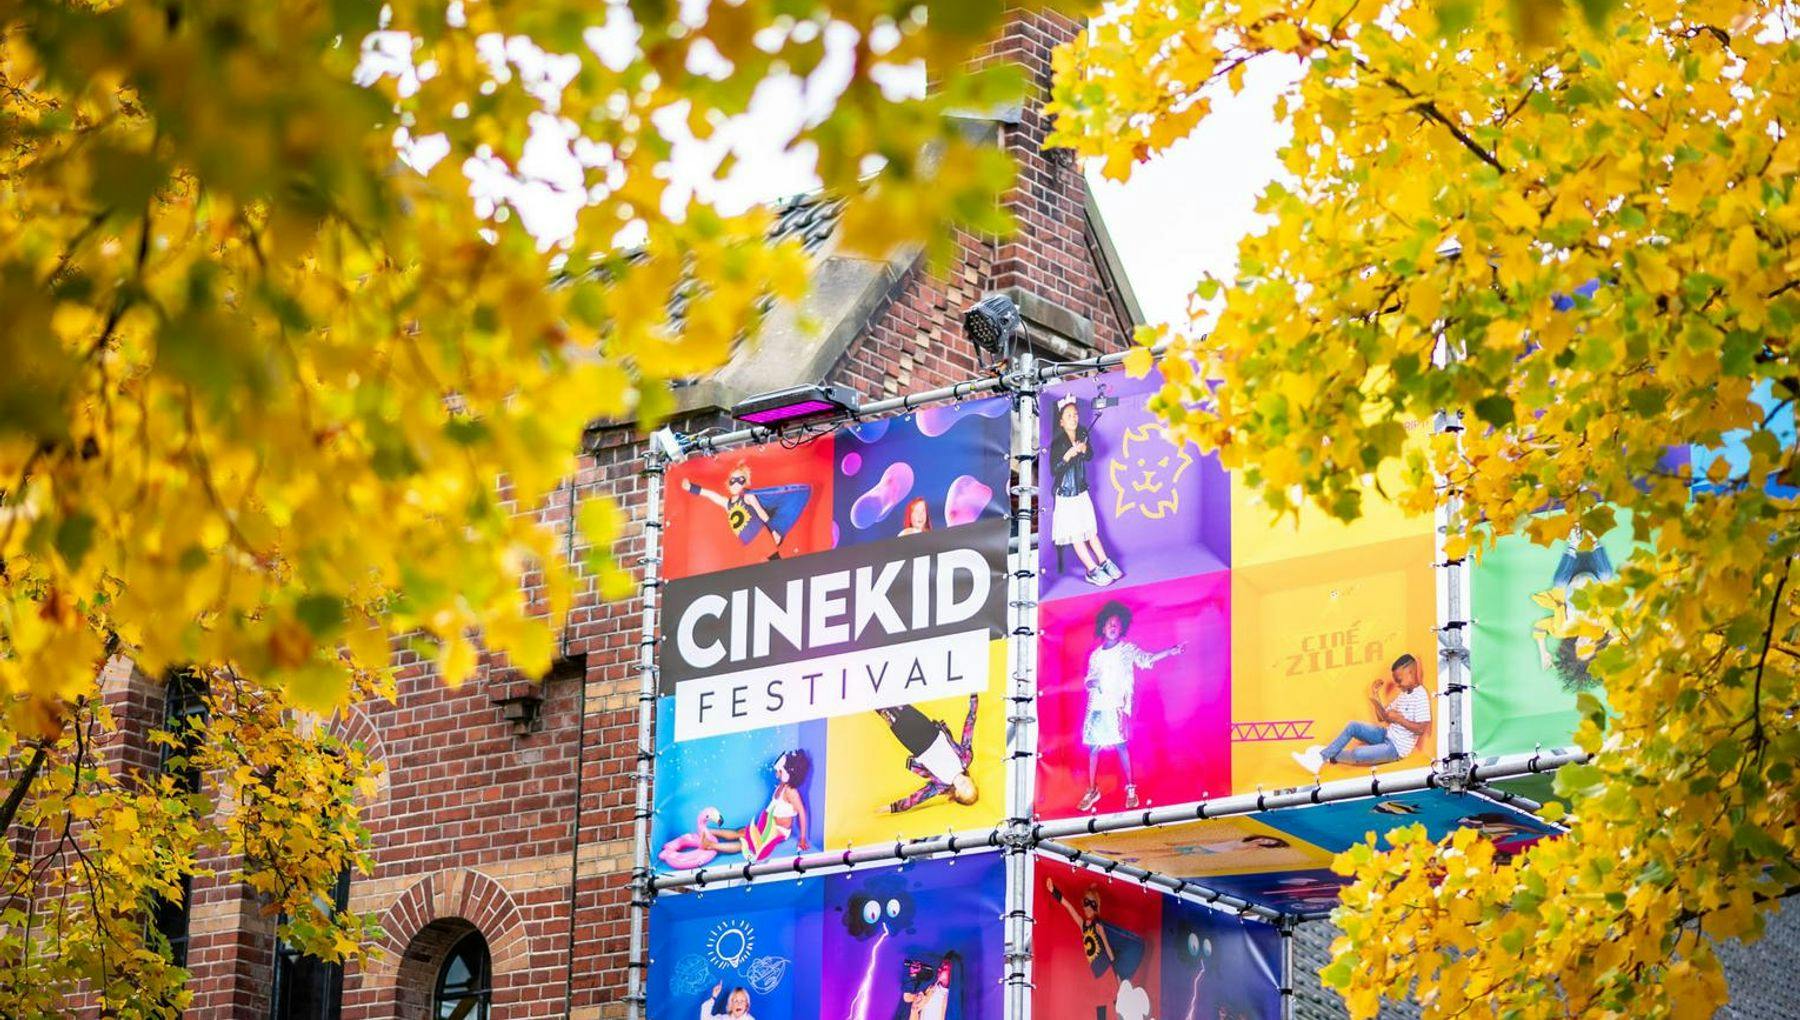 Cinekid film festival for children at Westergas in Westerpark.